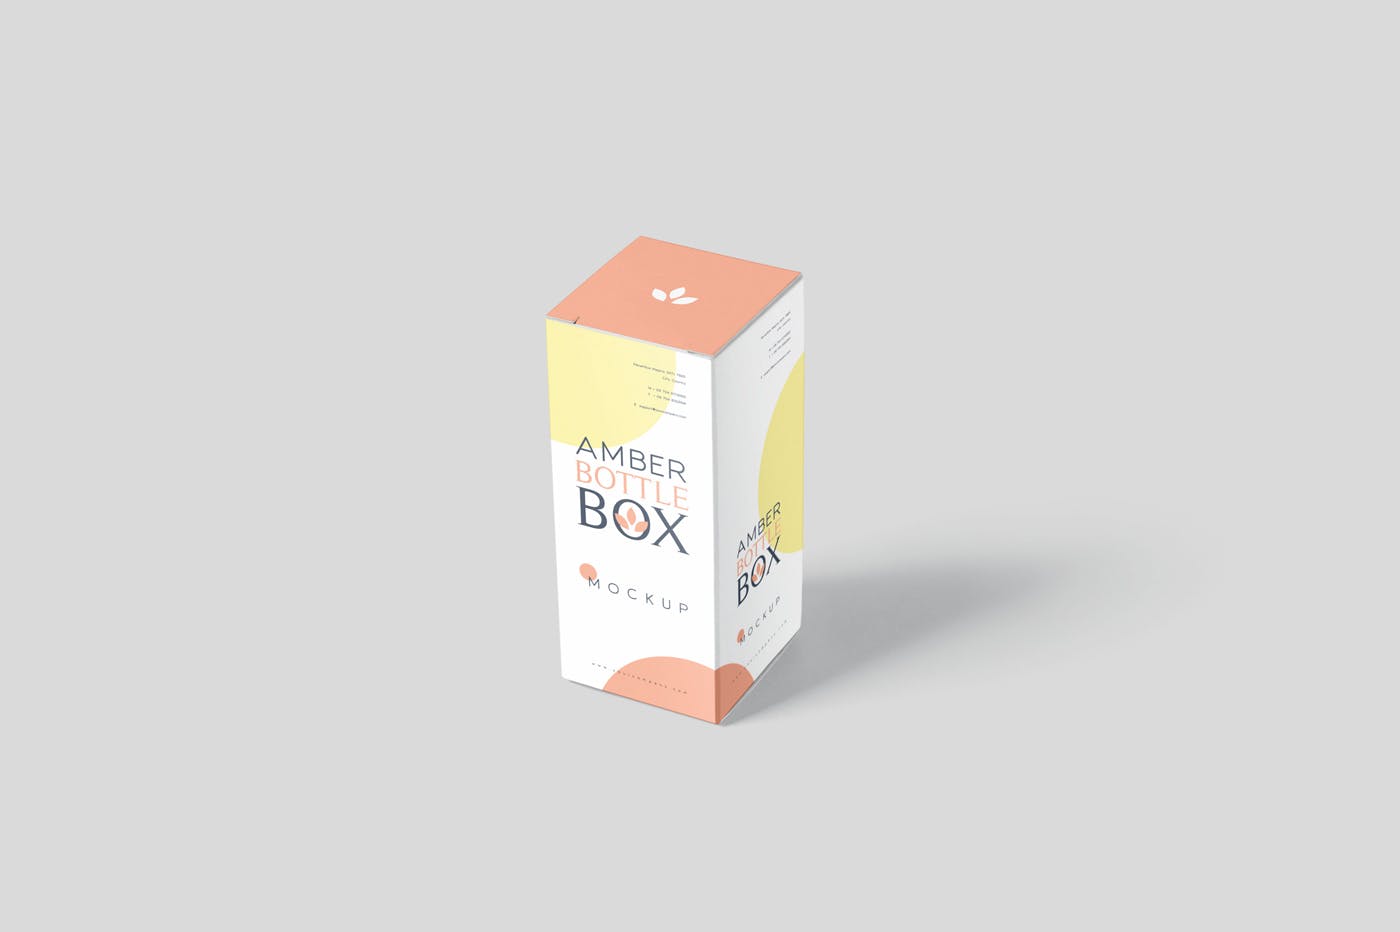 药物瓶&包装纸盒设计图素材中国精选模板 Amber Bottle Box Mockup Set插图(2)